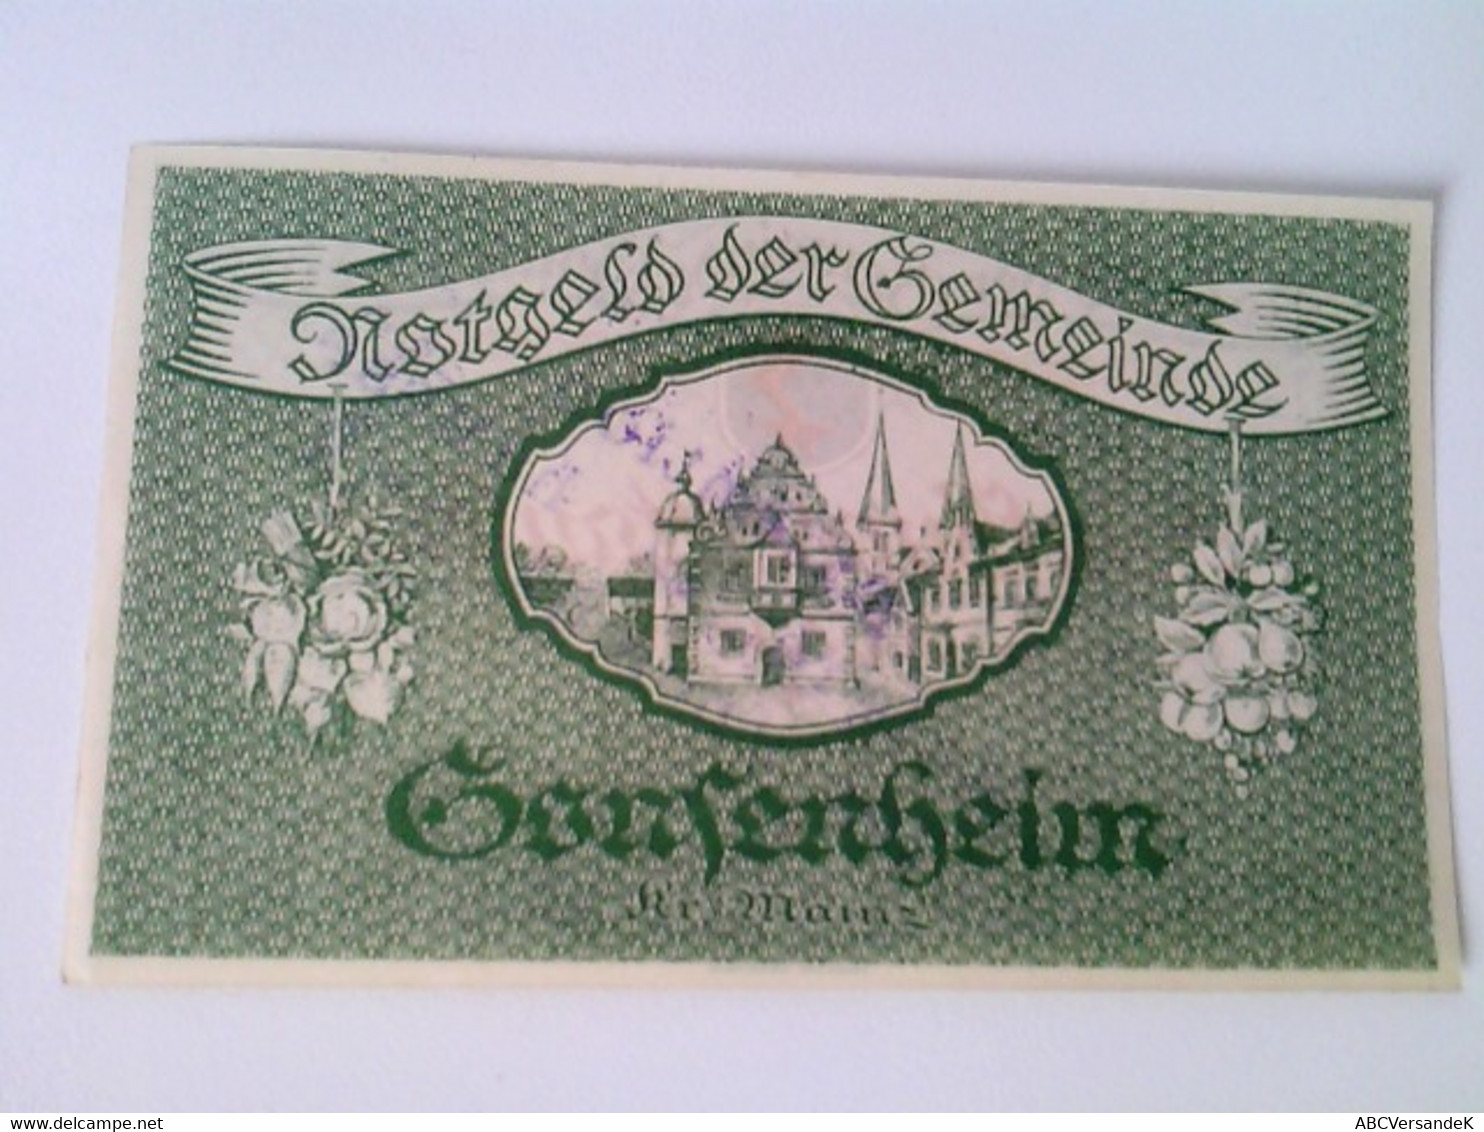 Notgeld Der Gemeinde Gonsenheim: 1 Schein:  500 000 Mark. 17. August 1923 - Numismatics